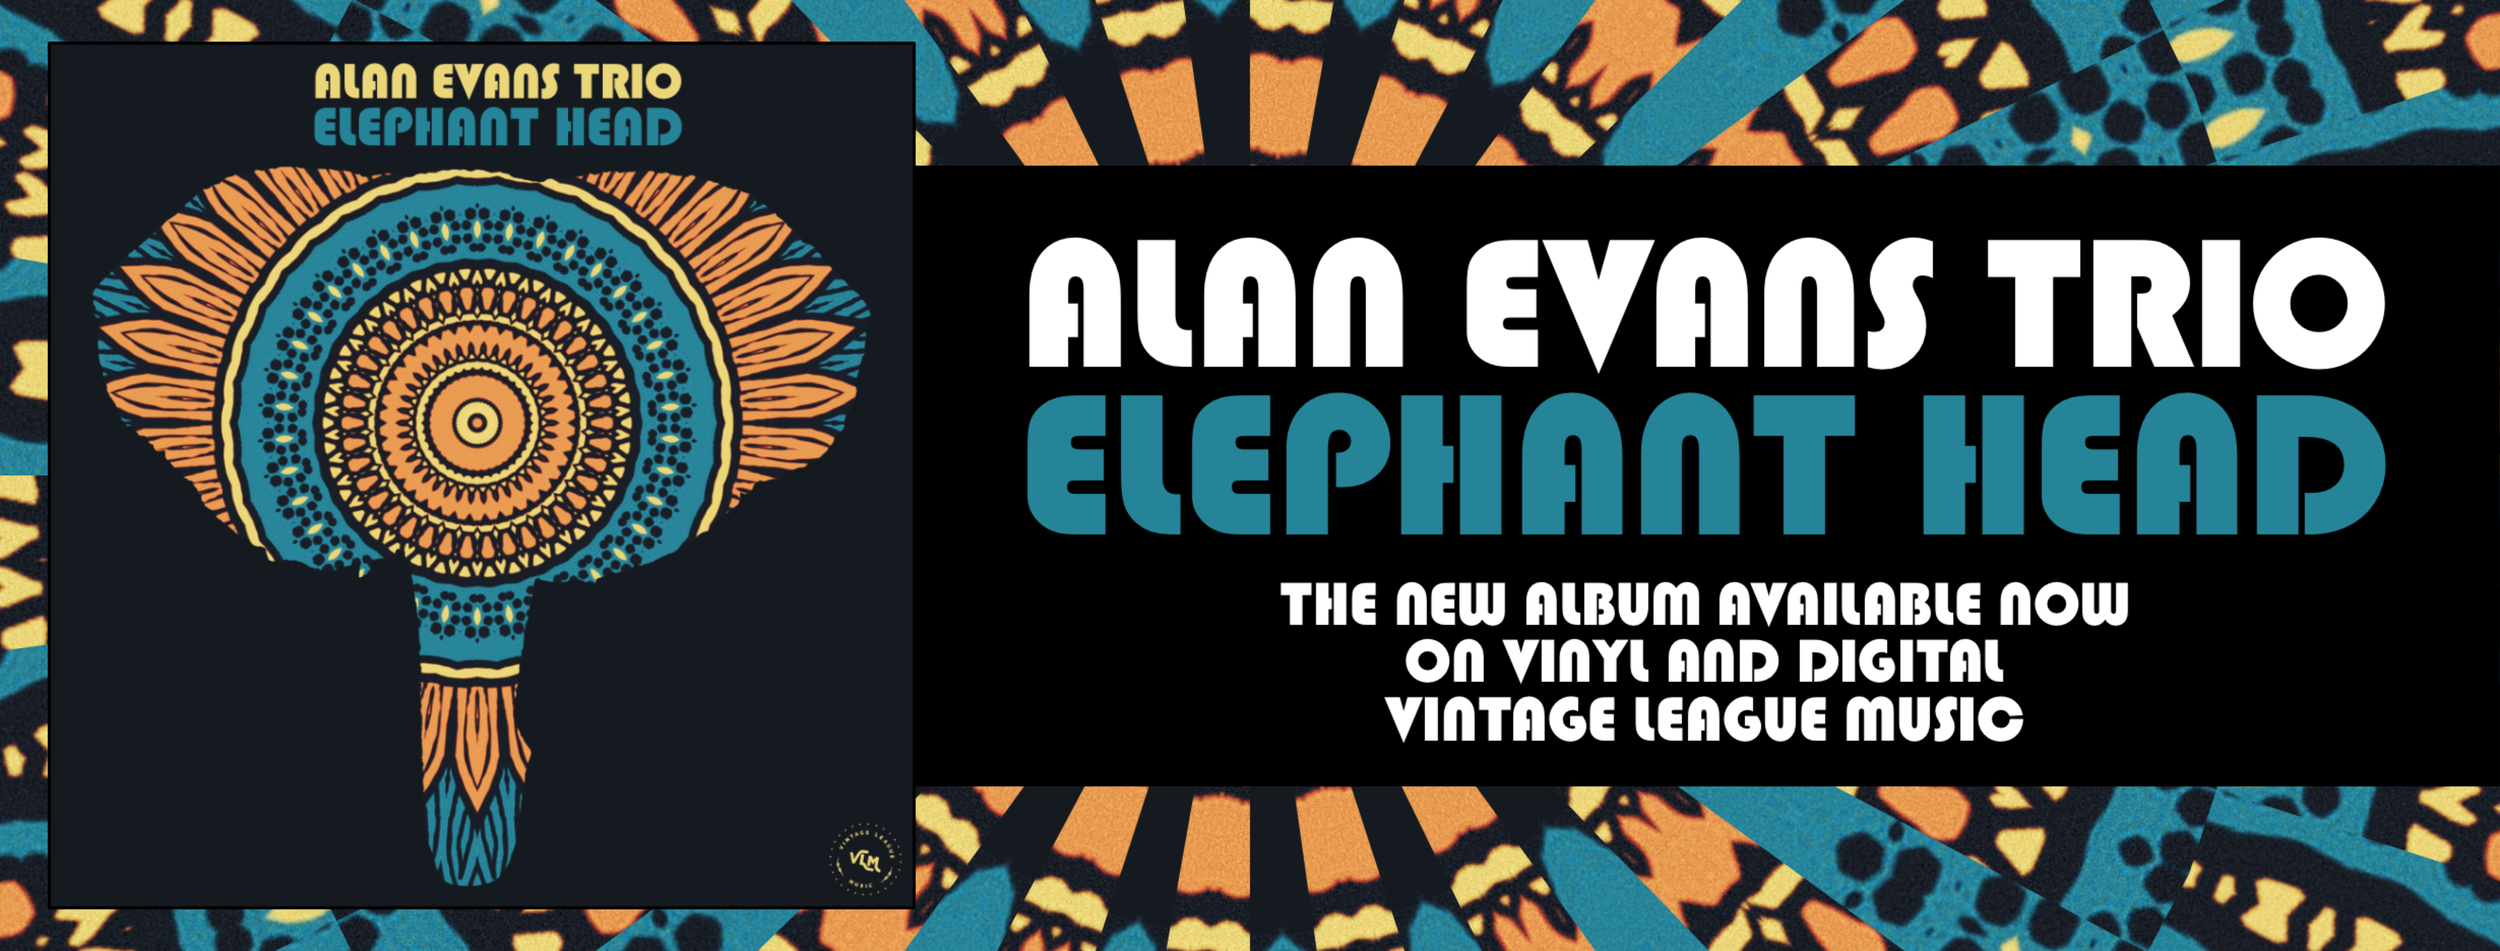 Elephant Head Album Banner no cd@3x.png